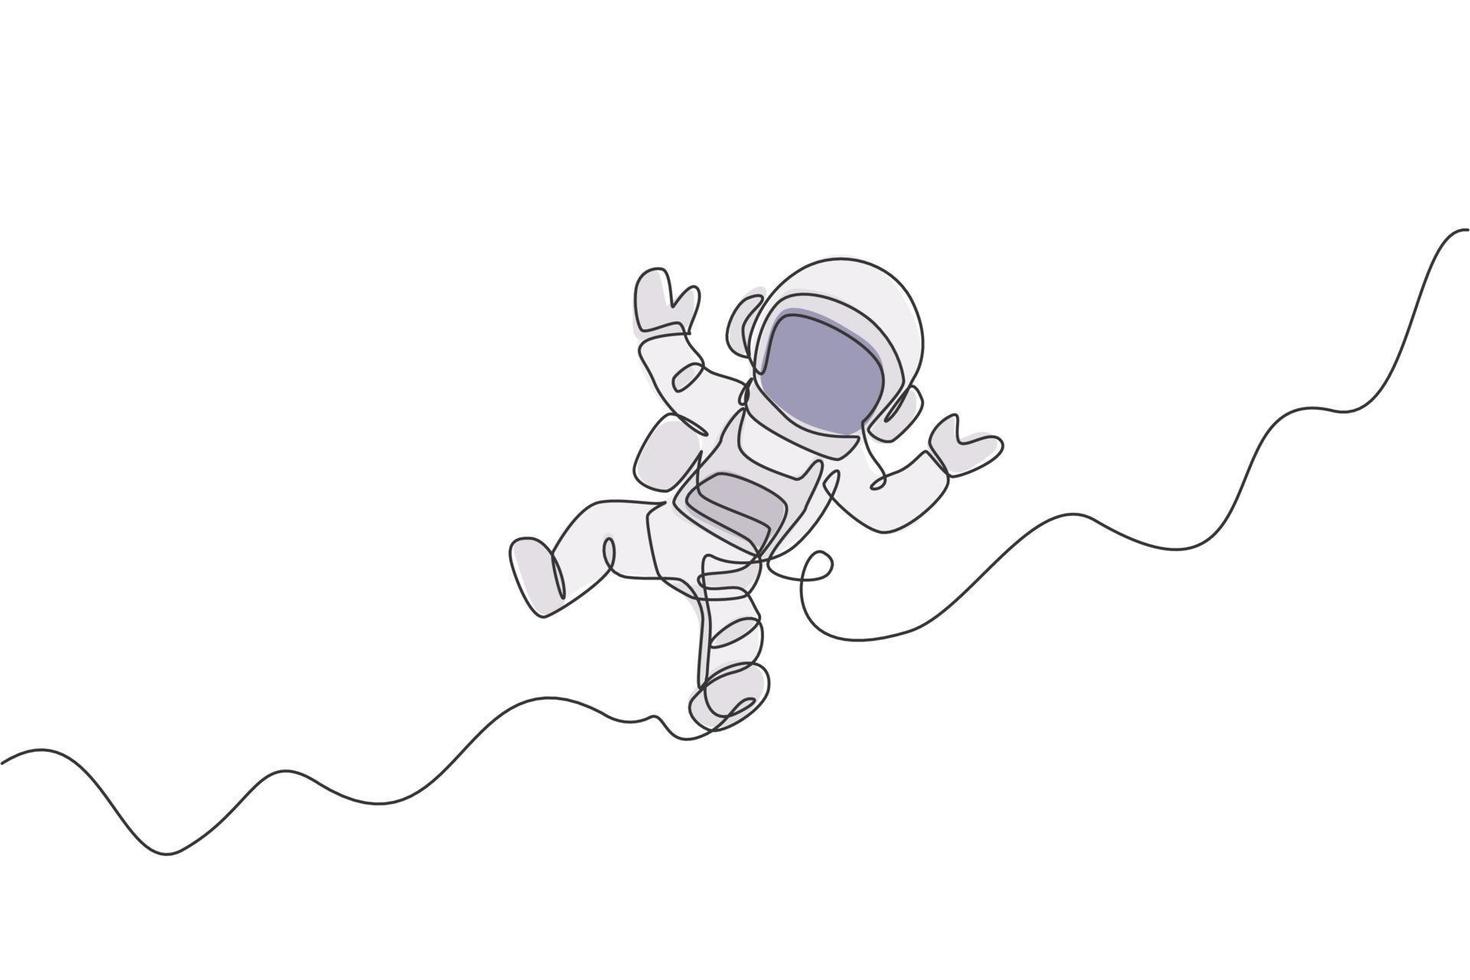 um desenho de linha contínua de um jovem cientista astronauta explorando o espaço sideral em estilo retro. conceito de descoberta do cosmos do astronauta. ilustração em vetor design gráfico de desenho de linha única dinâmica